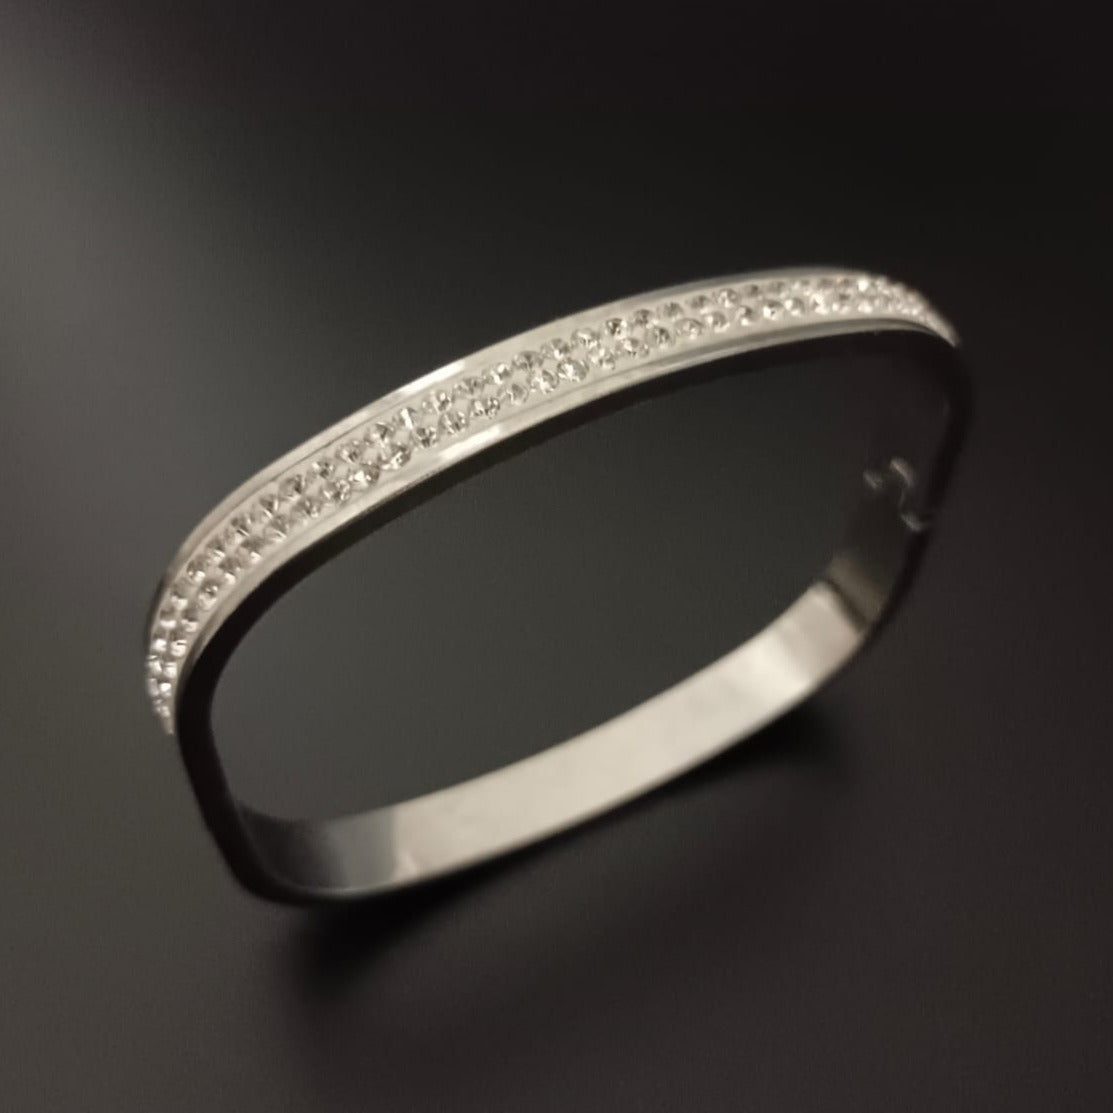 New Silver Rectangular Style Design Diamond Bracelet For Women and Girl